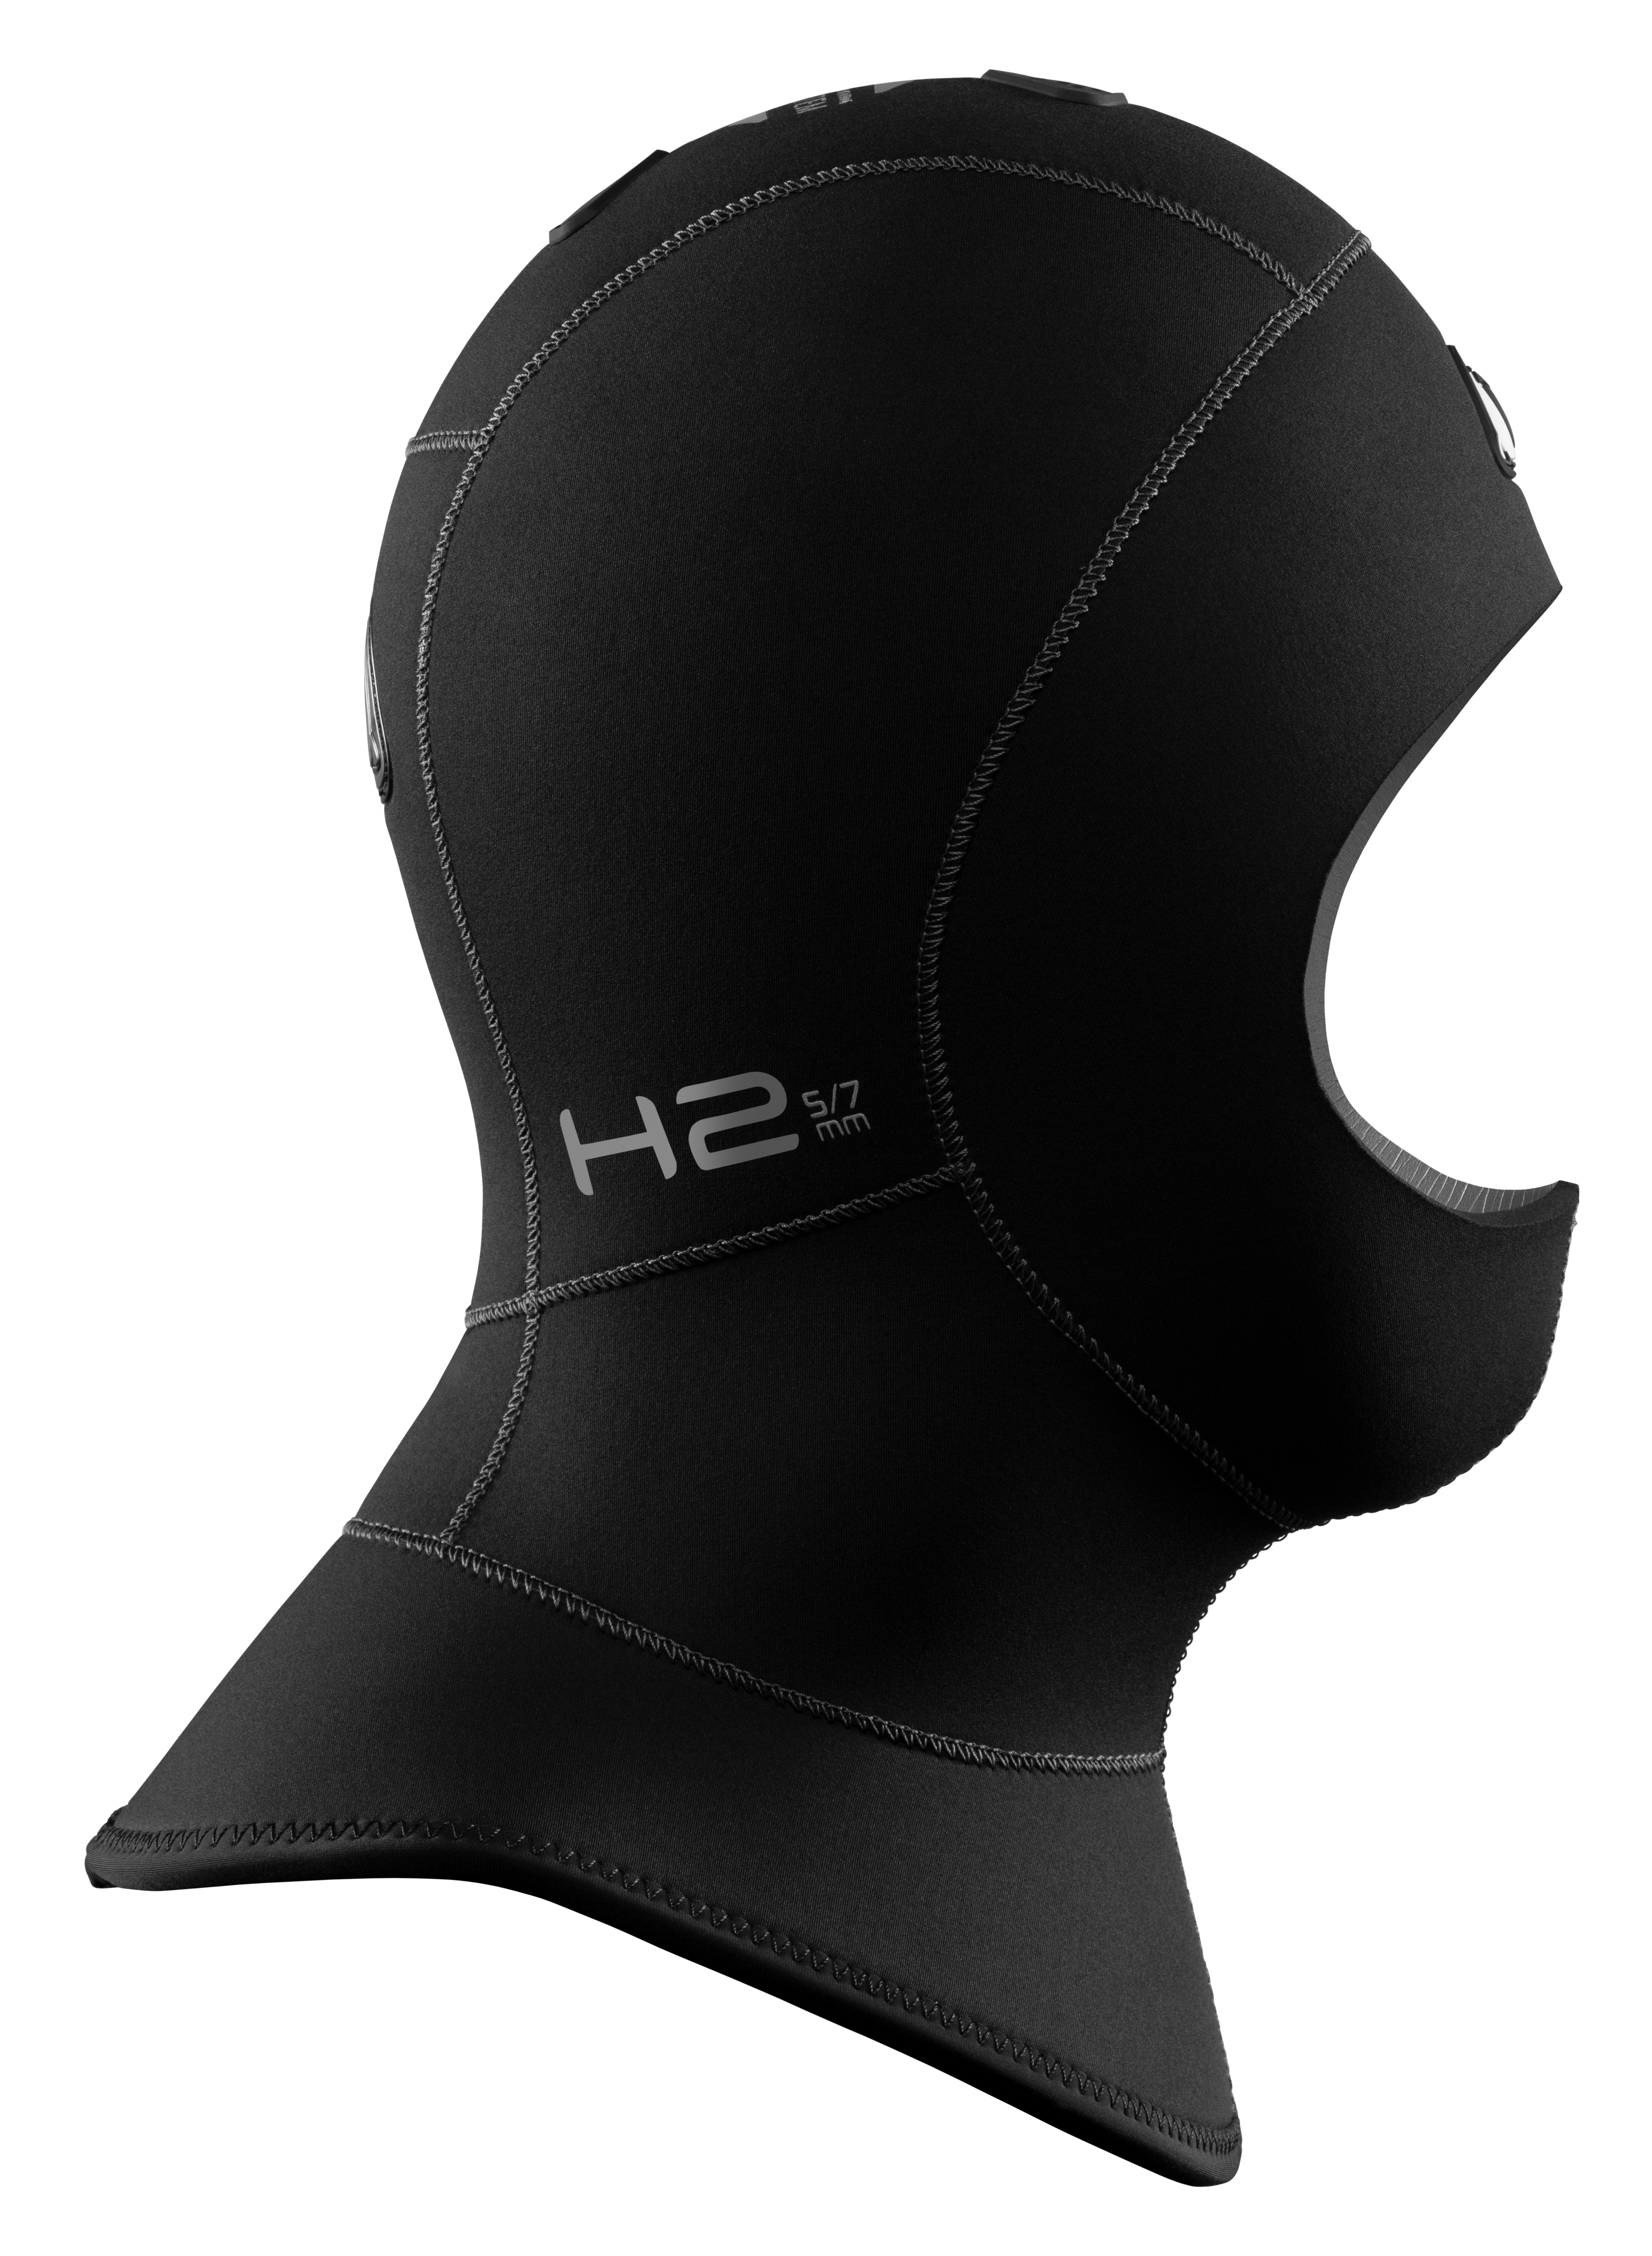 Waterproof H2 5/7 mm Kopfhaube mit Ventil aus Neopren